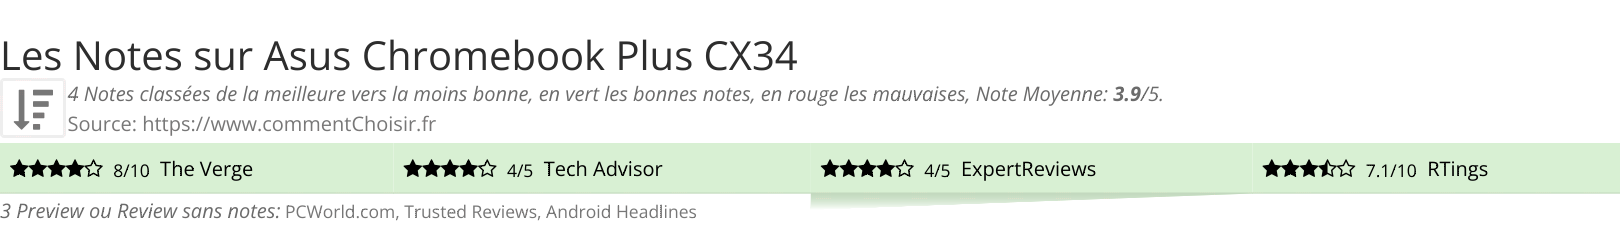 Ratings Asus  Chromebook Plus CX34